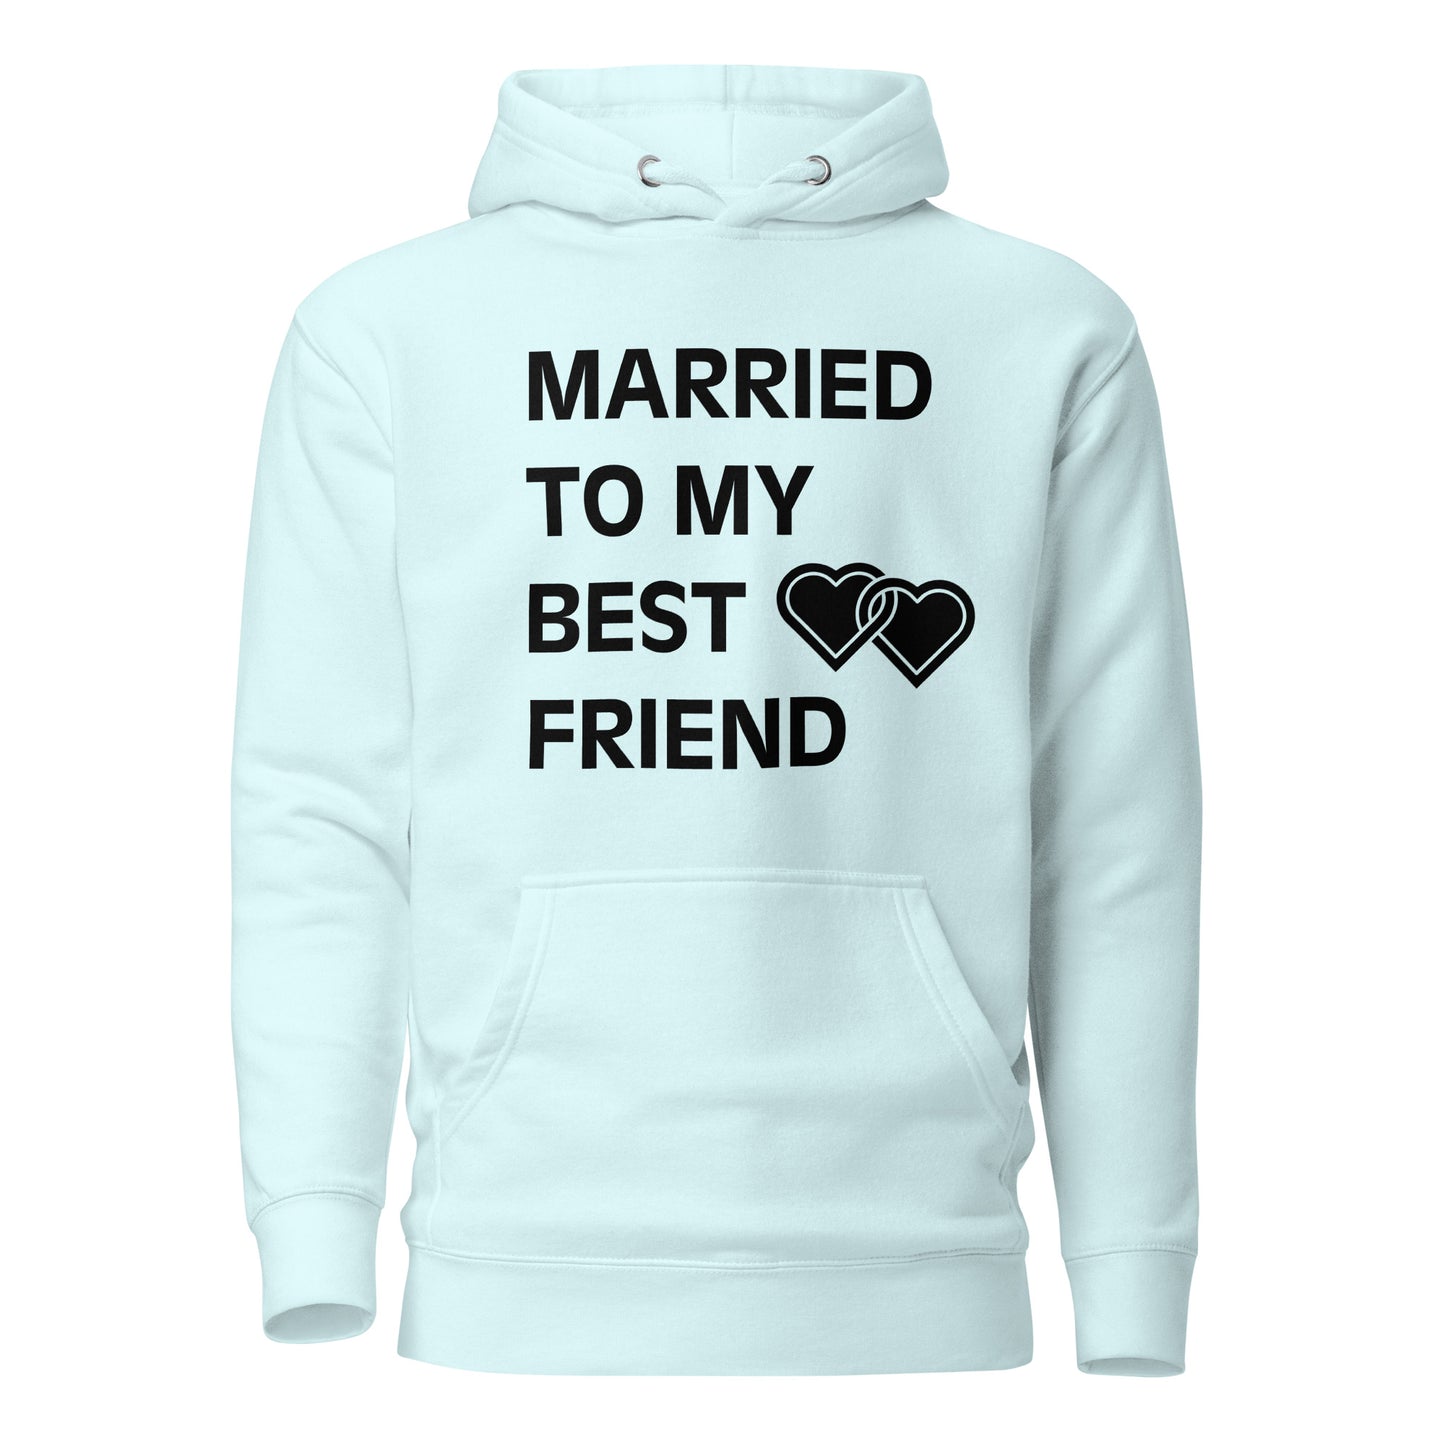 "Married To My Best Friend" Unisex Hoodie